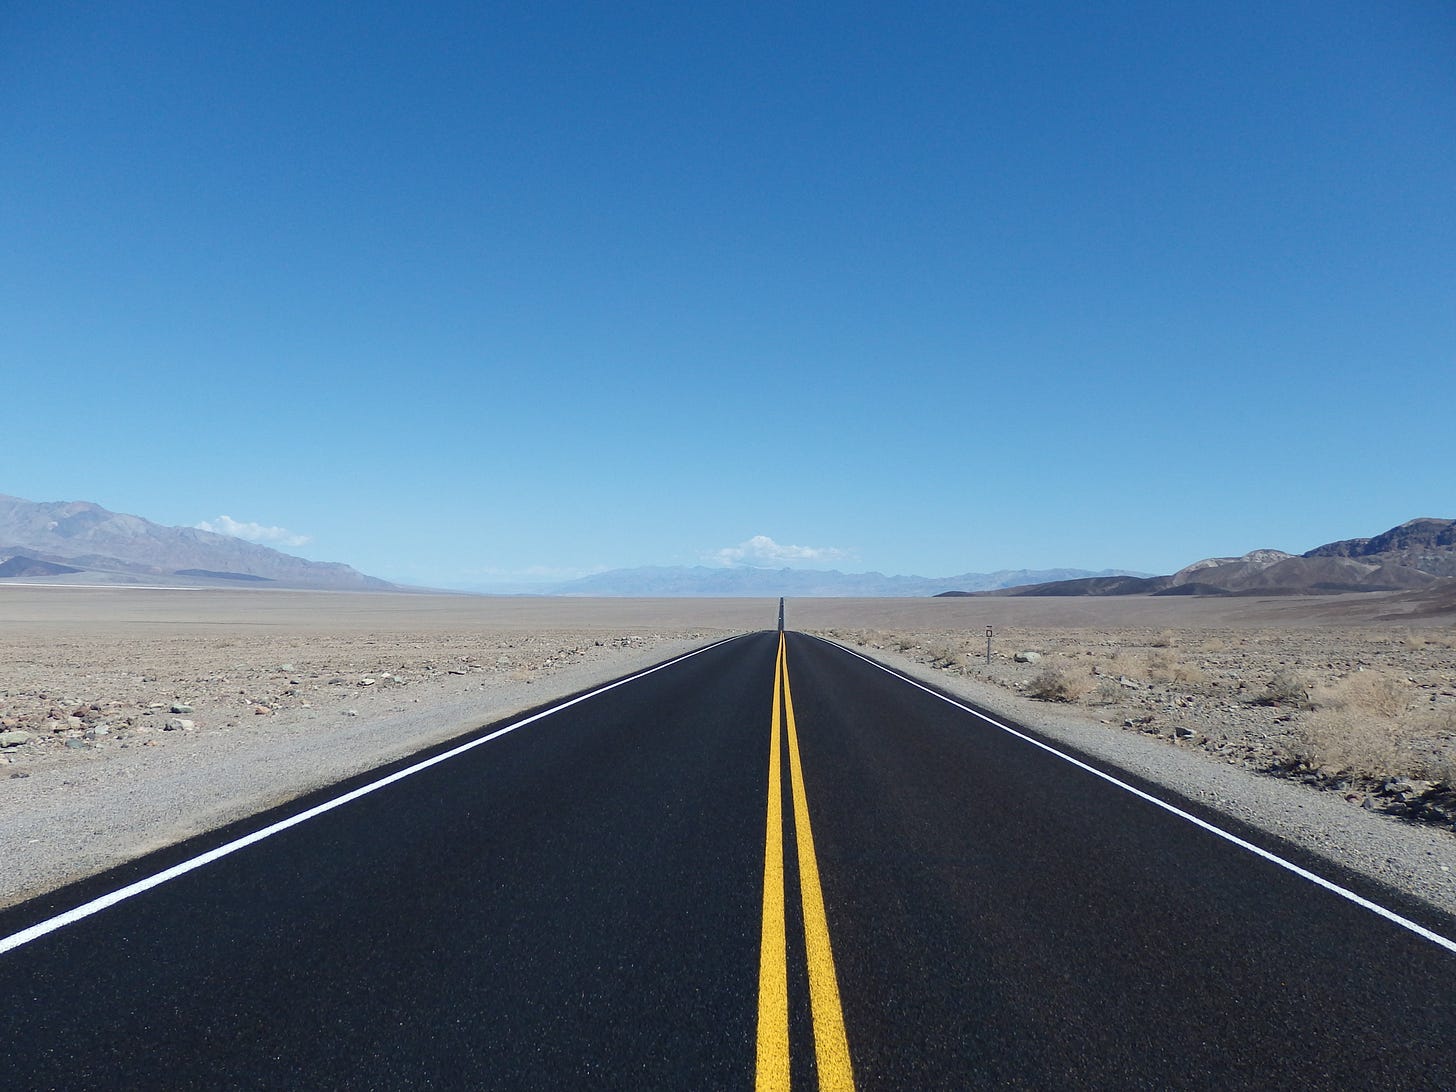 Highway in the desert